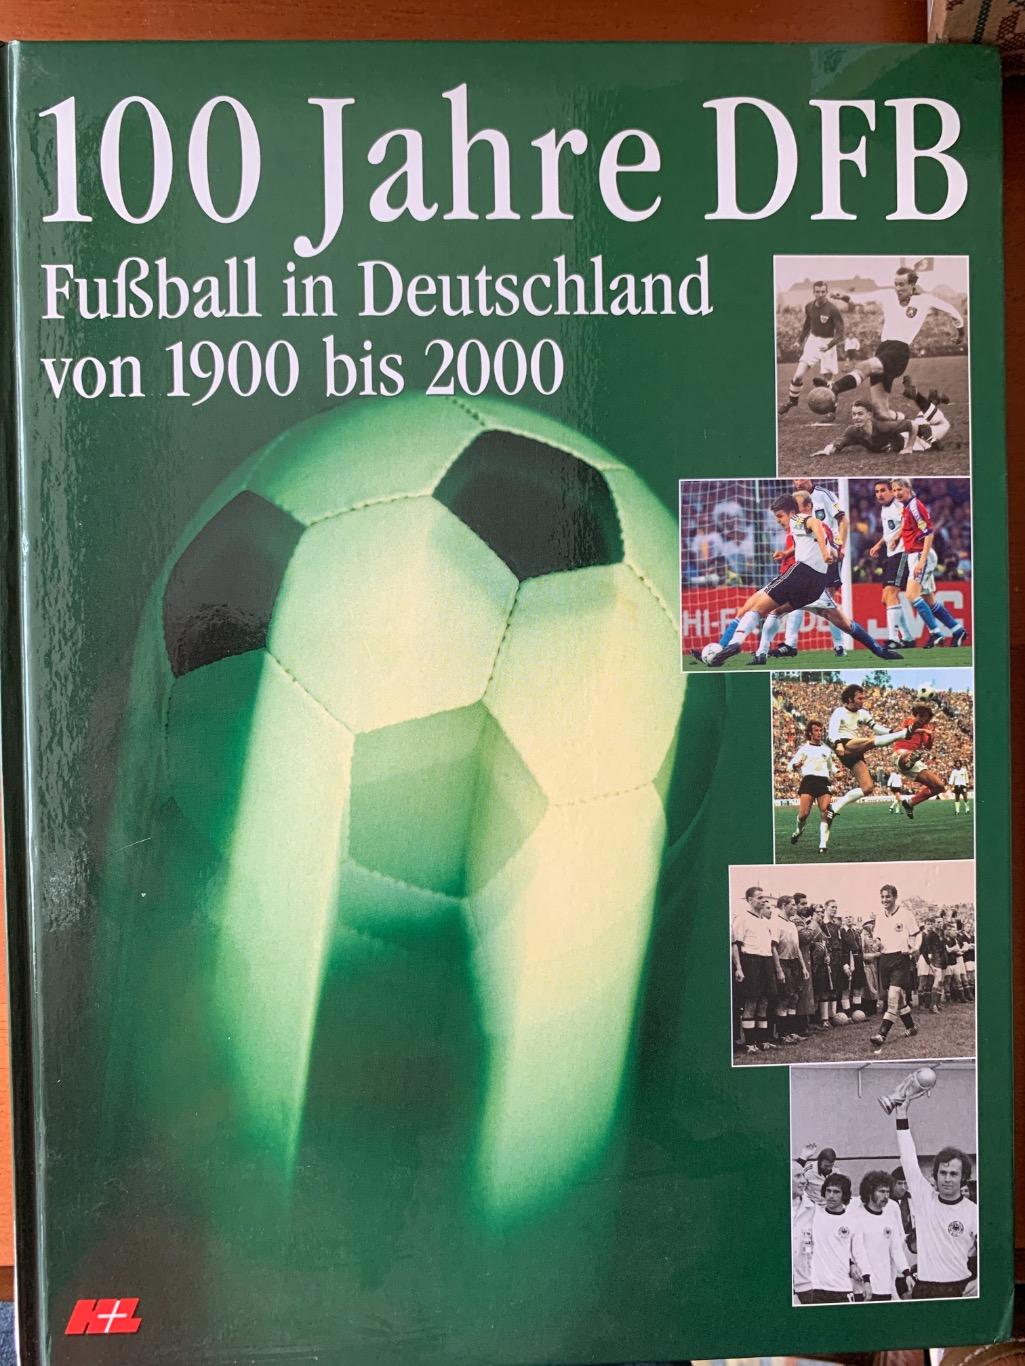 100 лет футбола Германии -2